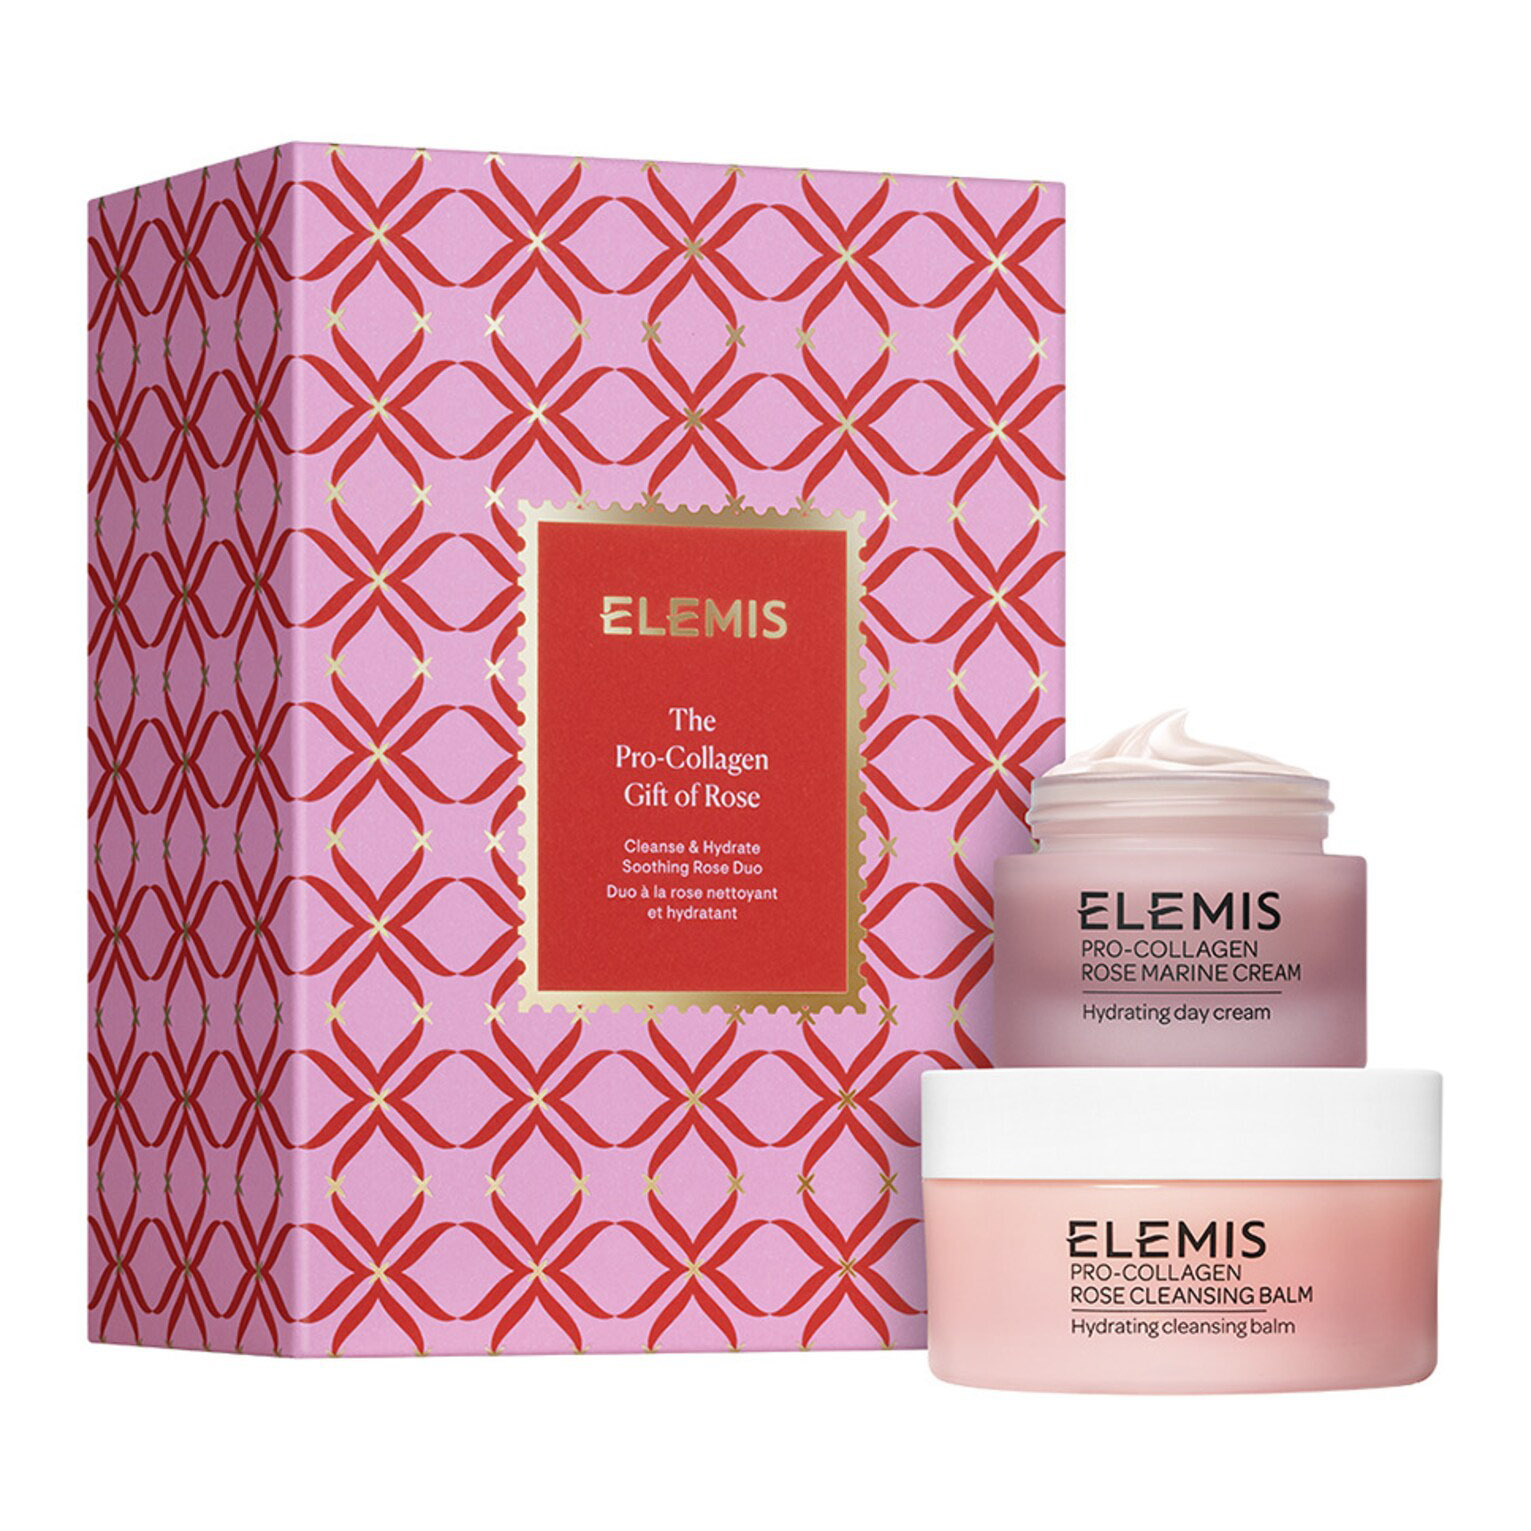 Подарочный набор Elemis The Pro-Collagen Gift Of Rose, 2 предмета набор знакомство обновление и защита кожи elemis pro collagen renew